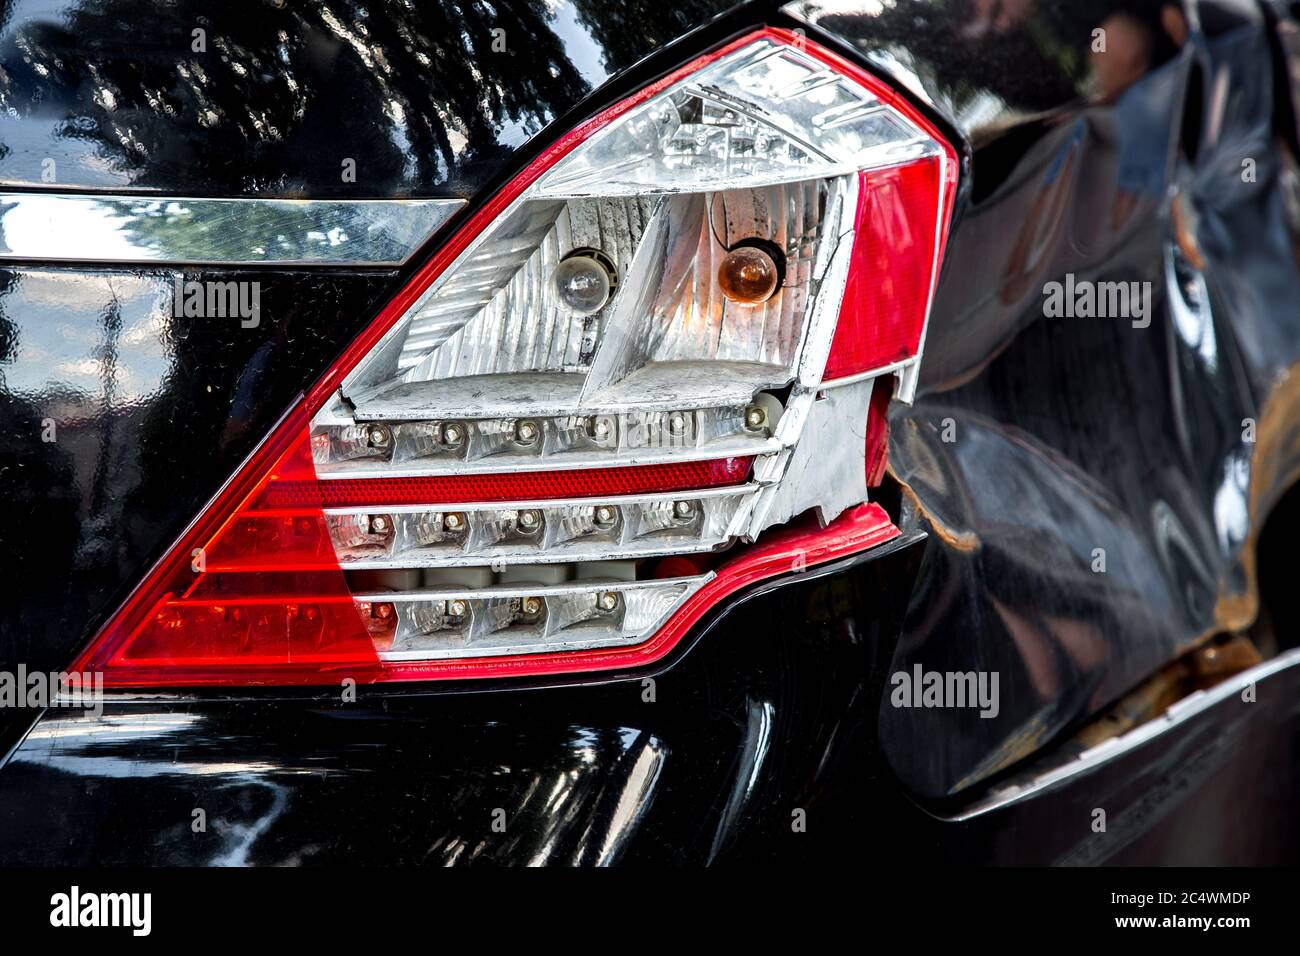 LED-Blinker in Der Hinteren Bremsleuchte Des Fahrzeugs. Moderne Auto  Laterne Nahaufnahme Stockbild - Bild von anschlagpuffer, automobil:  223472627